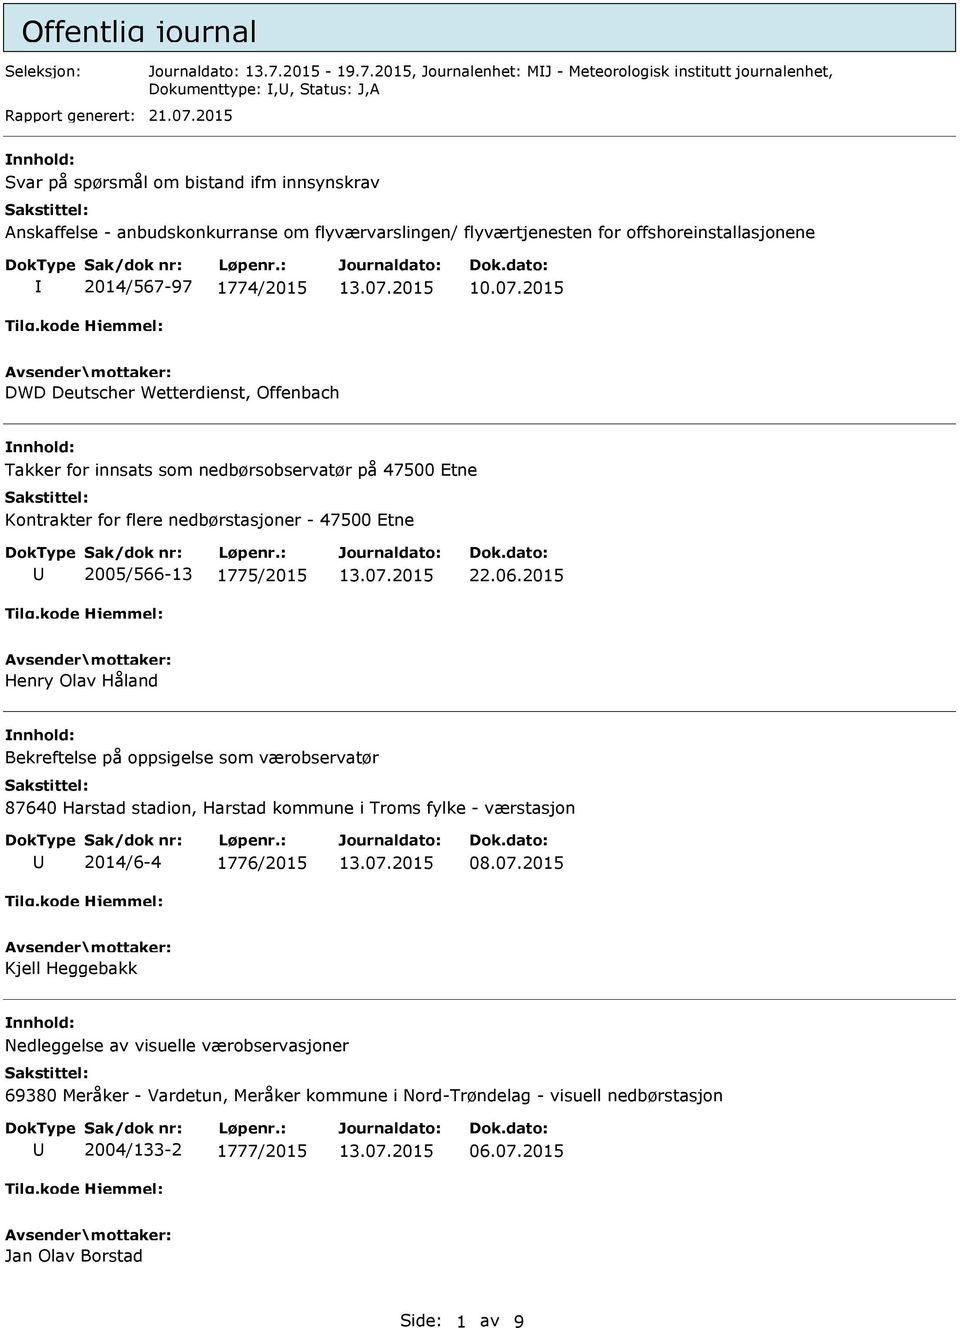 2015 DWD Deutscher Wetterdienst, Offenbach Takker for innsats som nedbørsobservatør på 47500 Etne Kontrakter for flere nedbørstasjoner - 47500 Etne 2005/566-13 1775/2015 22.06.